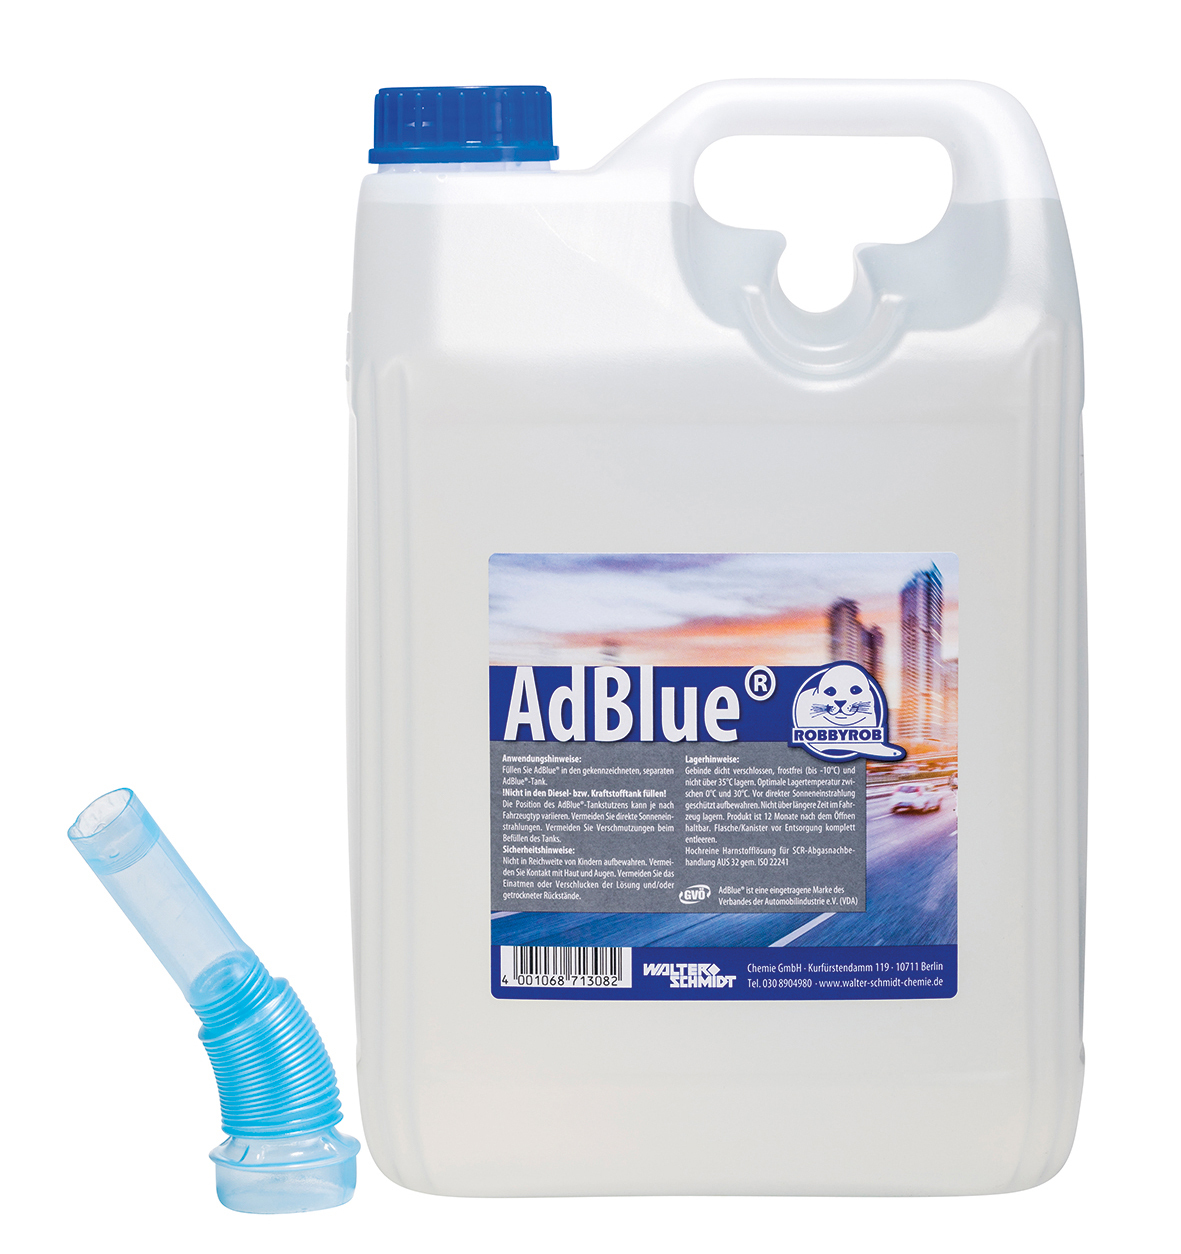 AdBlue 10 Liter Kanister